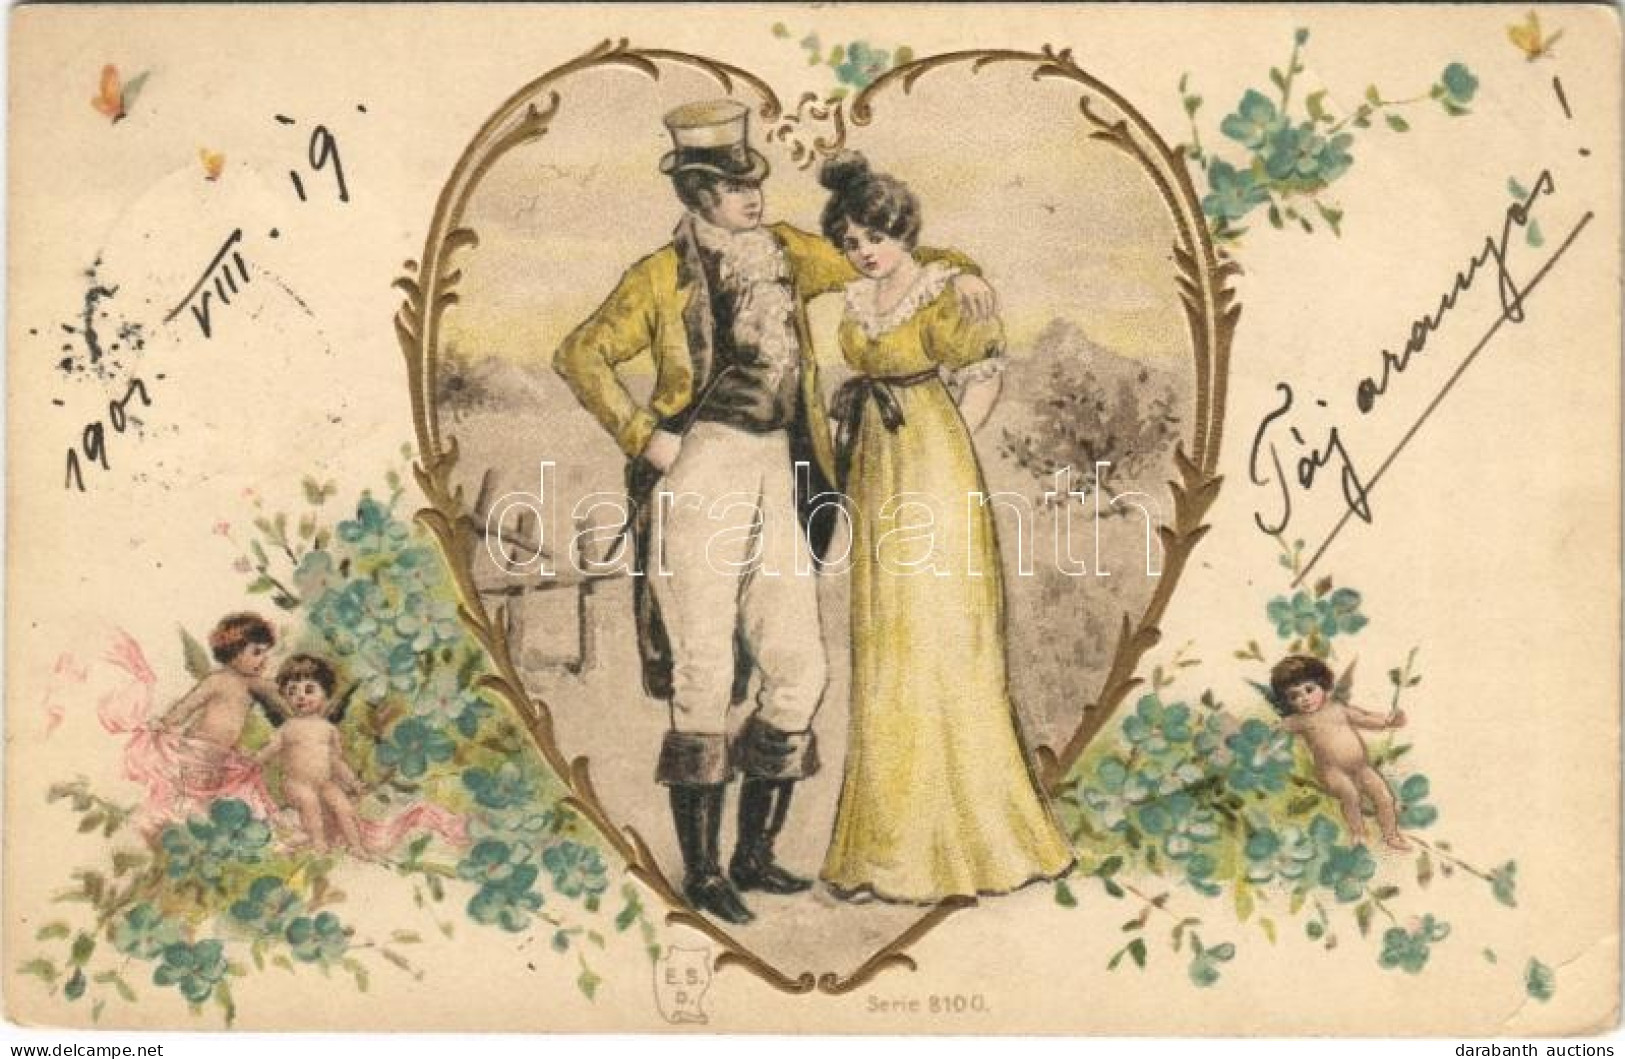 T2/T3 1901 Lady Art Postcard, Romantic Couple. E.S.D. Serie 8100. Art Nouveau, Floral, Litho (EB) - Unclassified